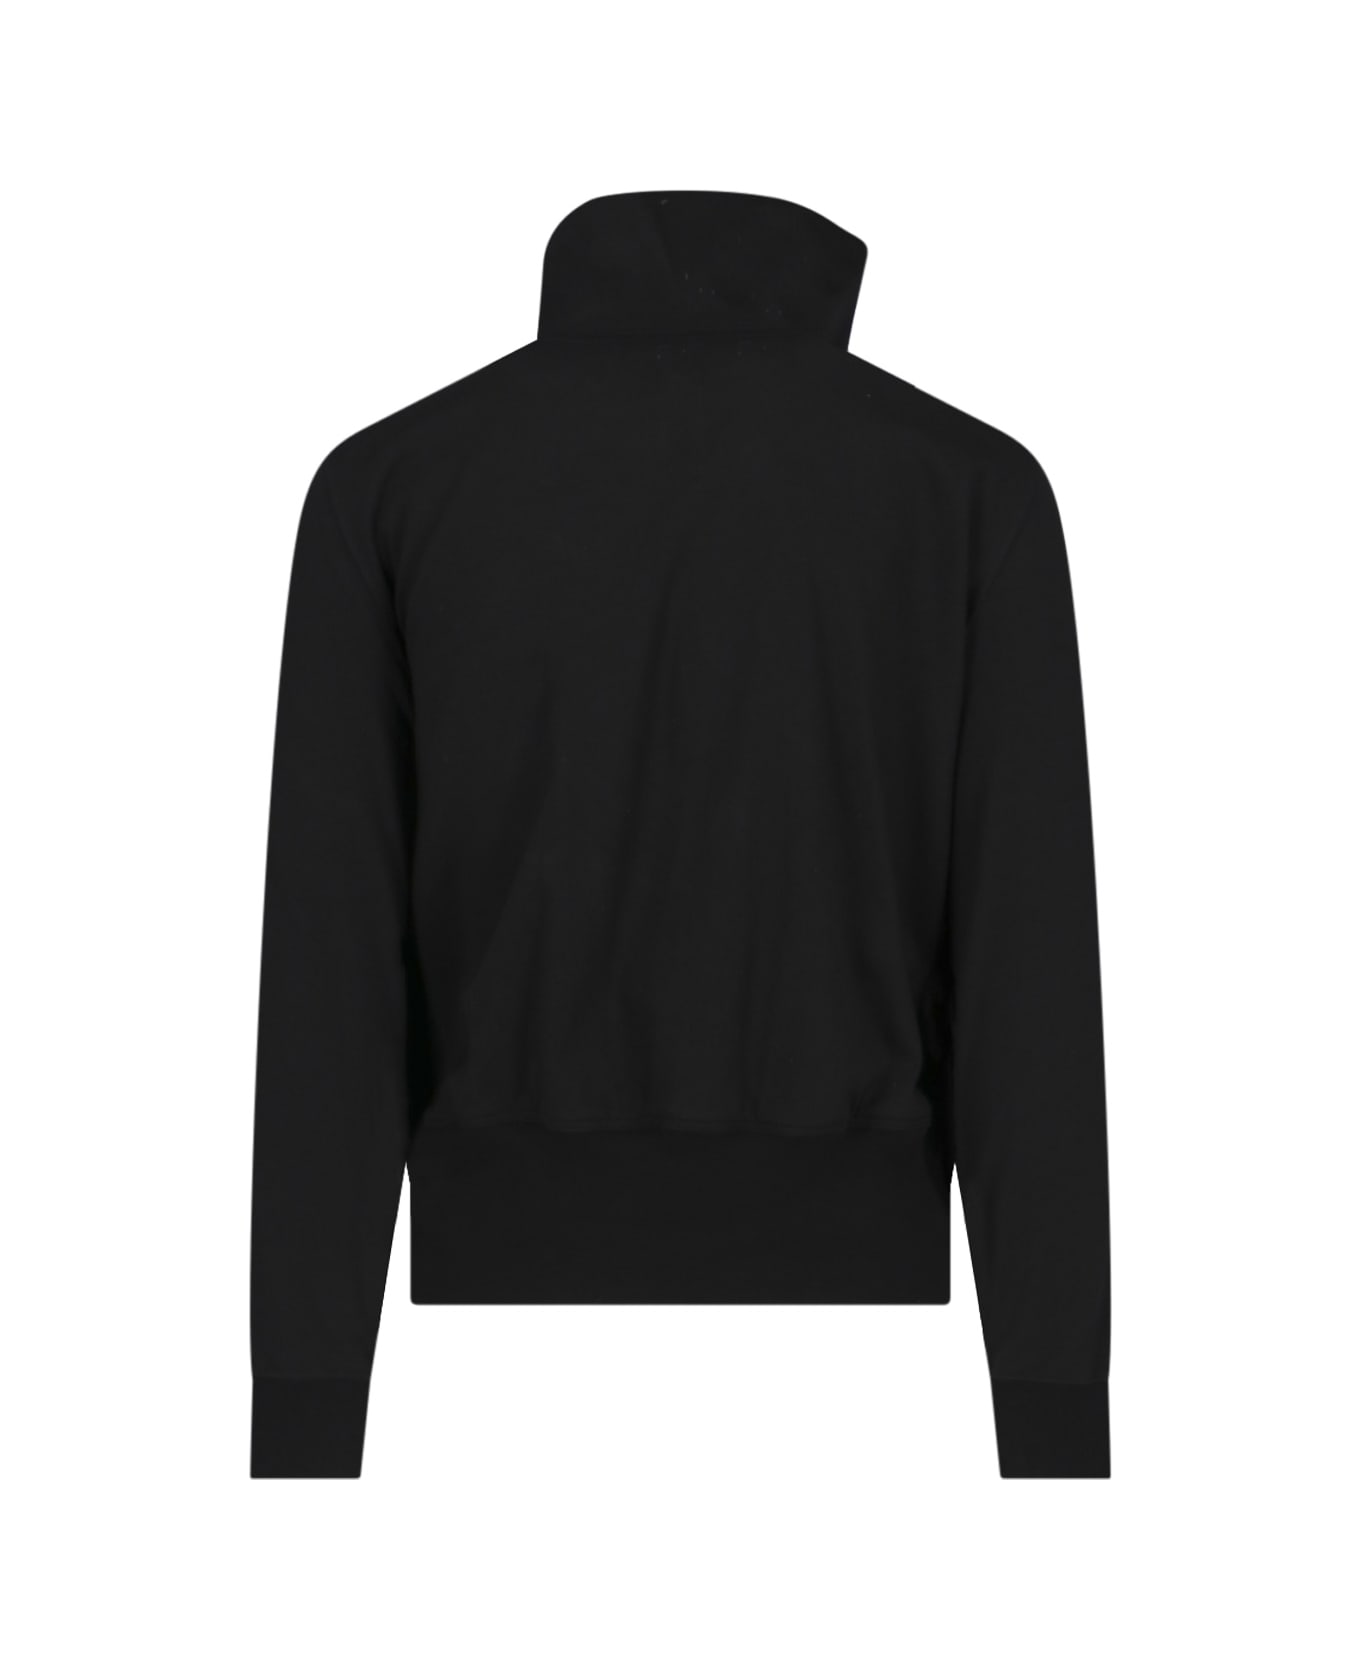 Rick Owens 'bauhaus' Sweatshirt - Black  